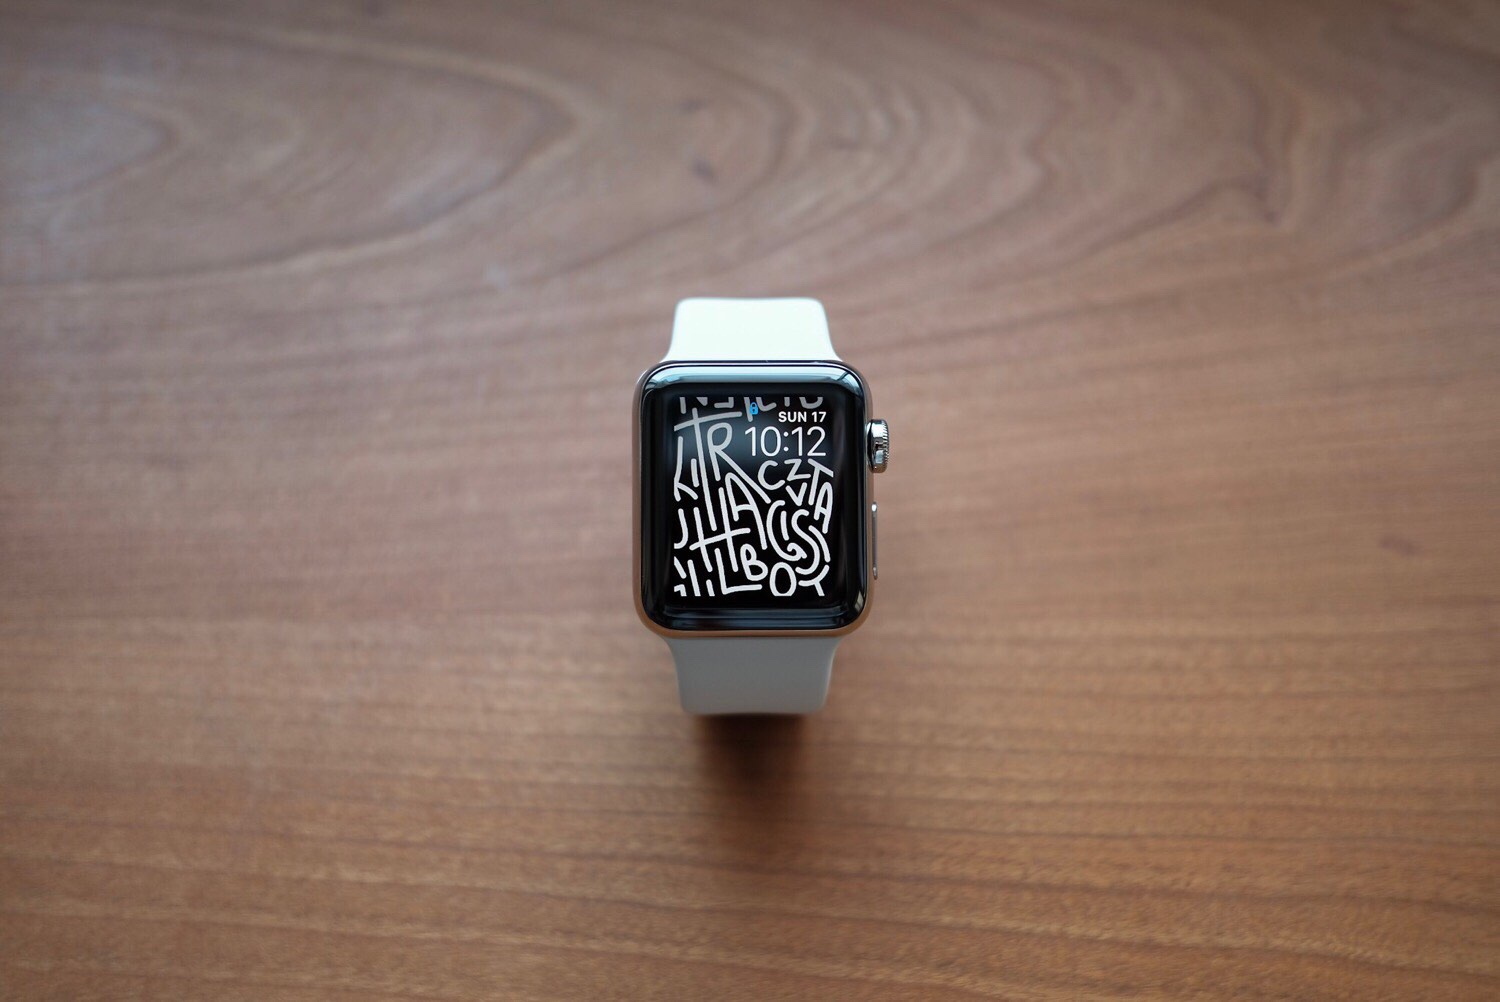 Apple Watch Series 3 – 38mmステンレススチールケースを購入しました